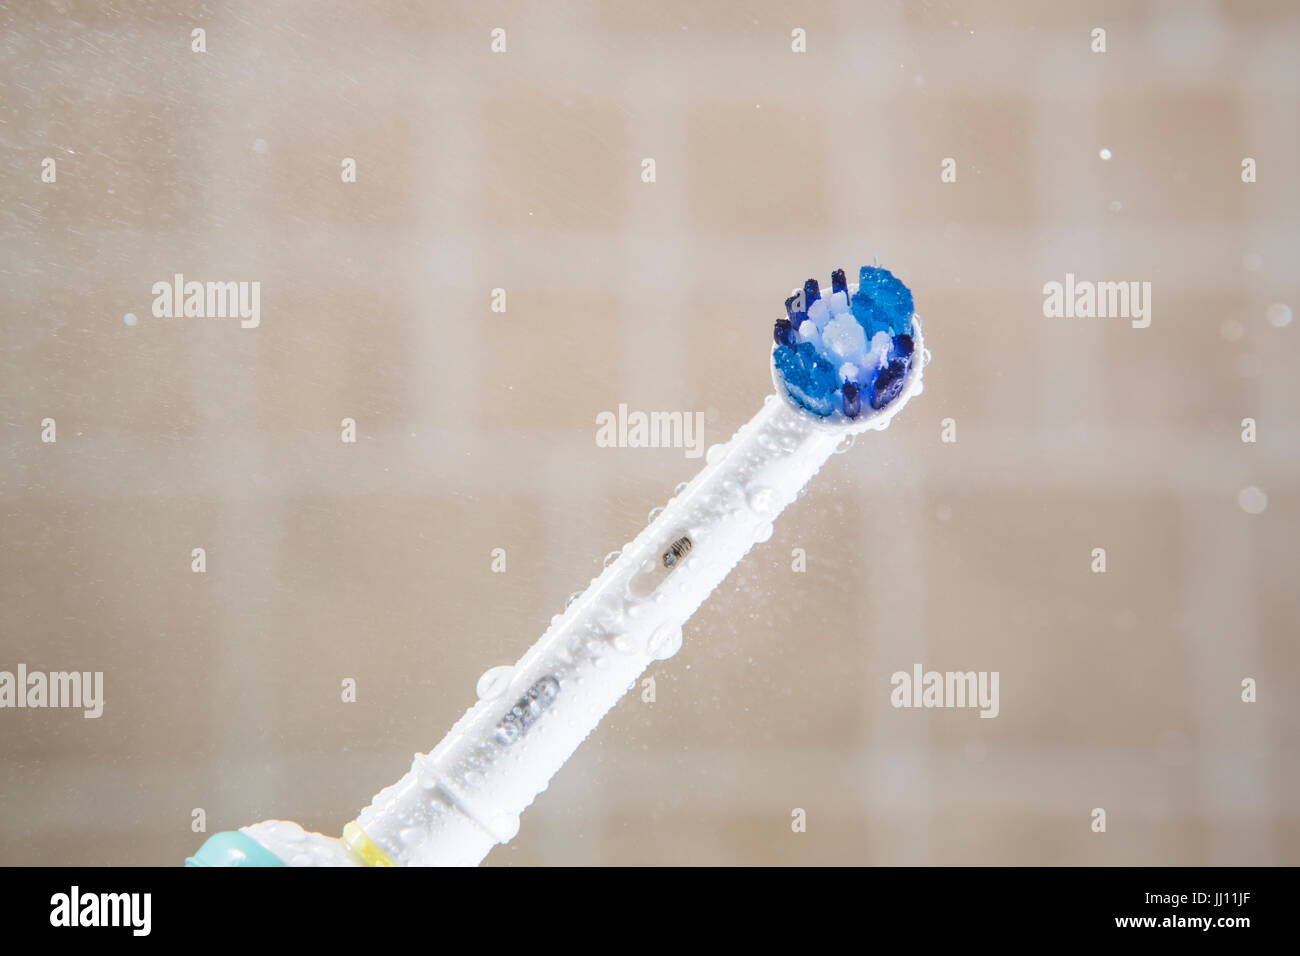 El cabezal del cepillo dental eléctrico en un baño. Foto de stock